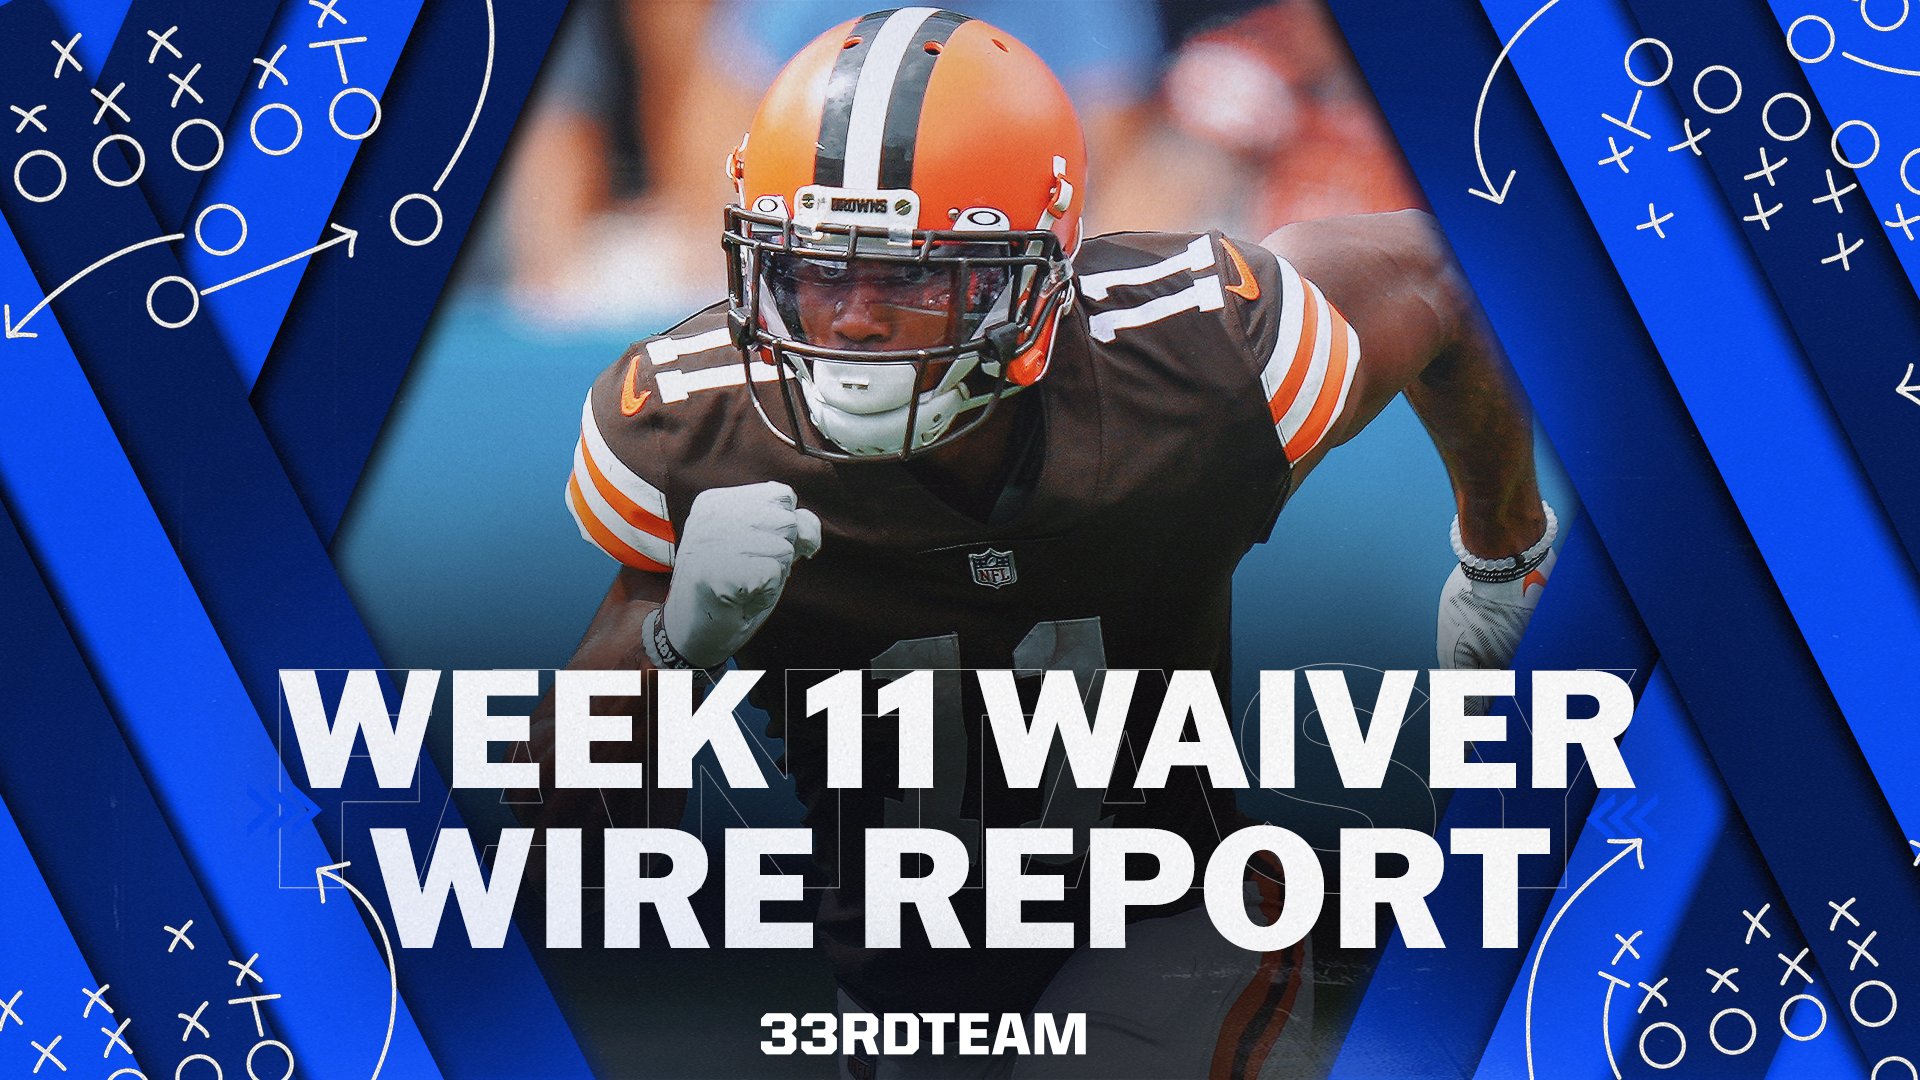 Week 11 Waivers report